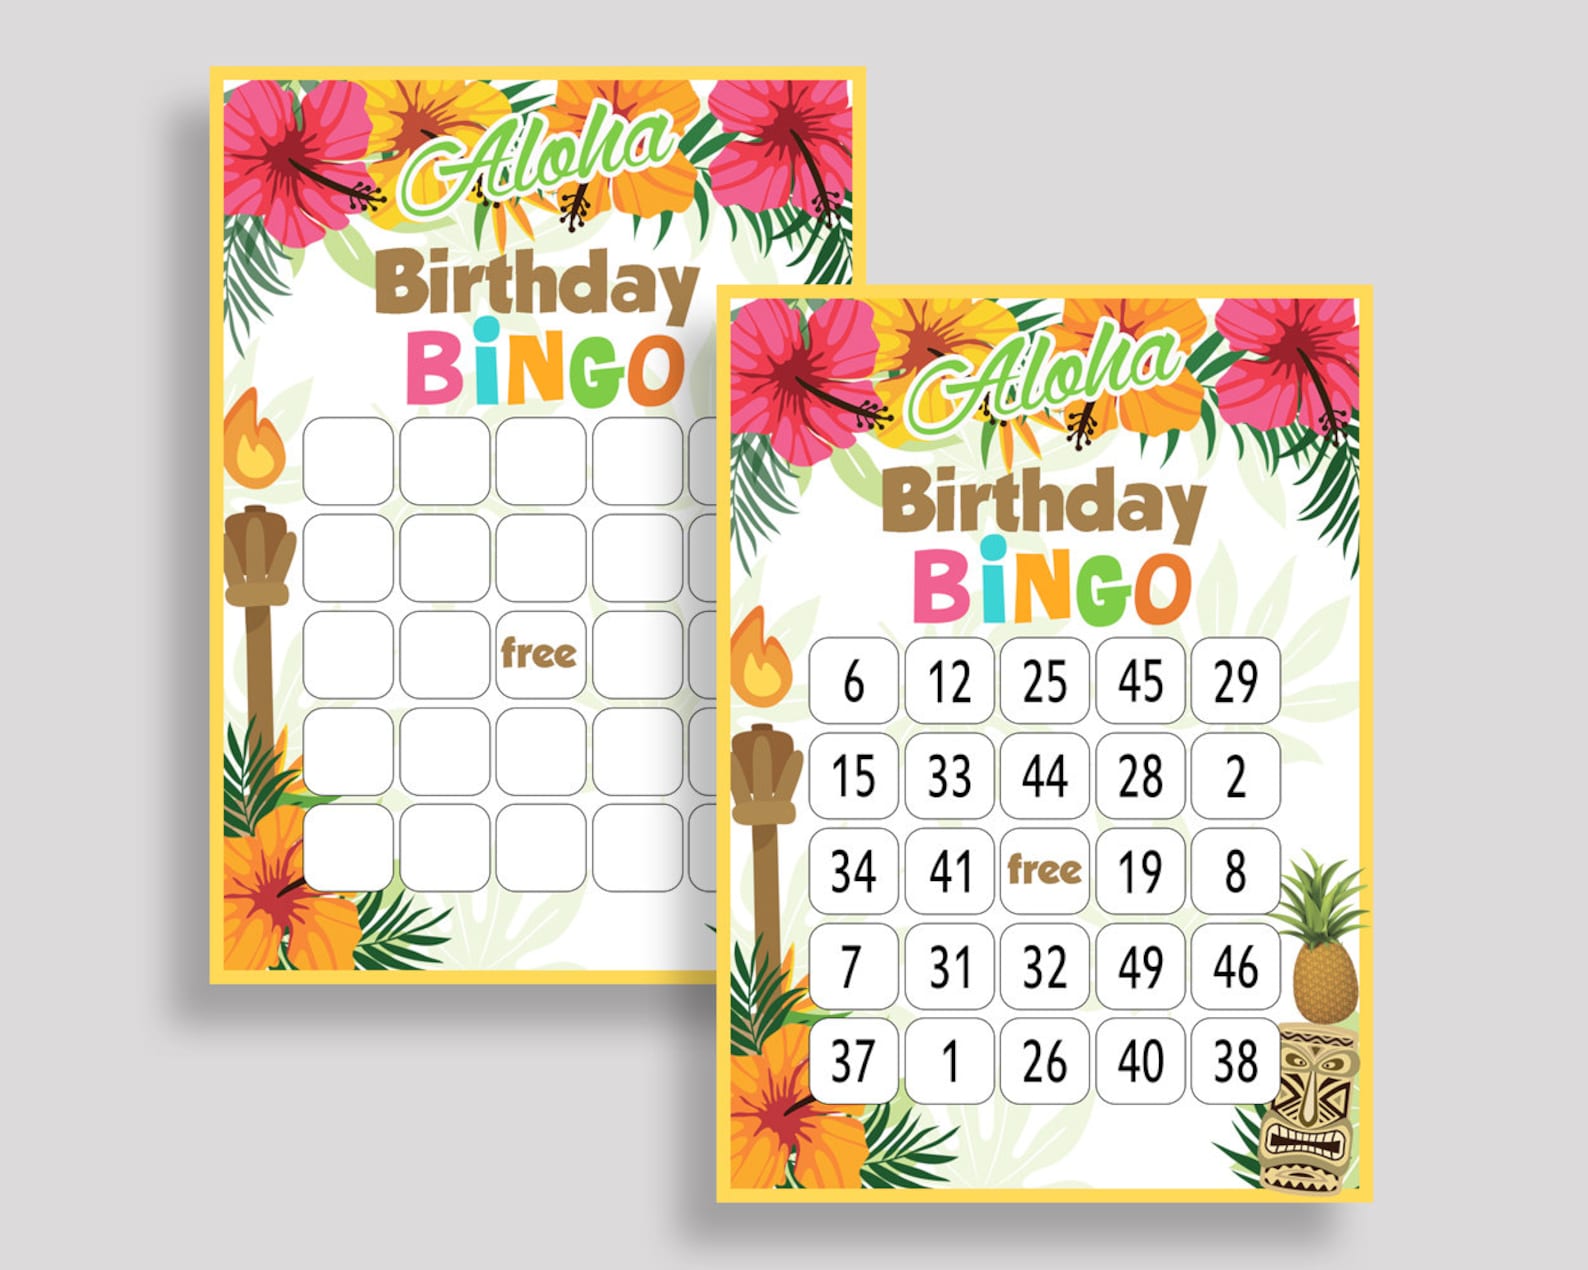 hawaii-bingo-cards-luau-bingo-game-hawaii-birthday-bingo-cards-rainbow